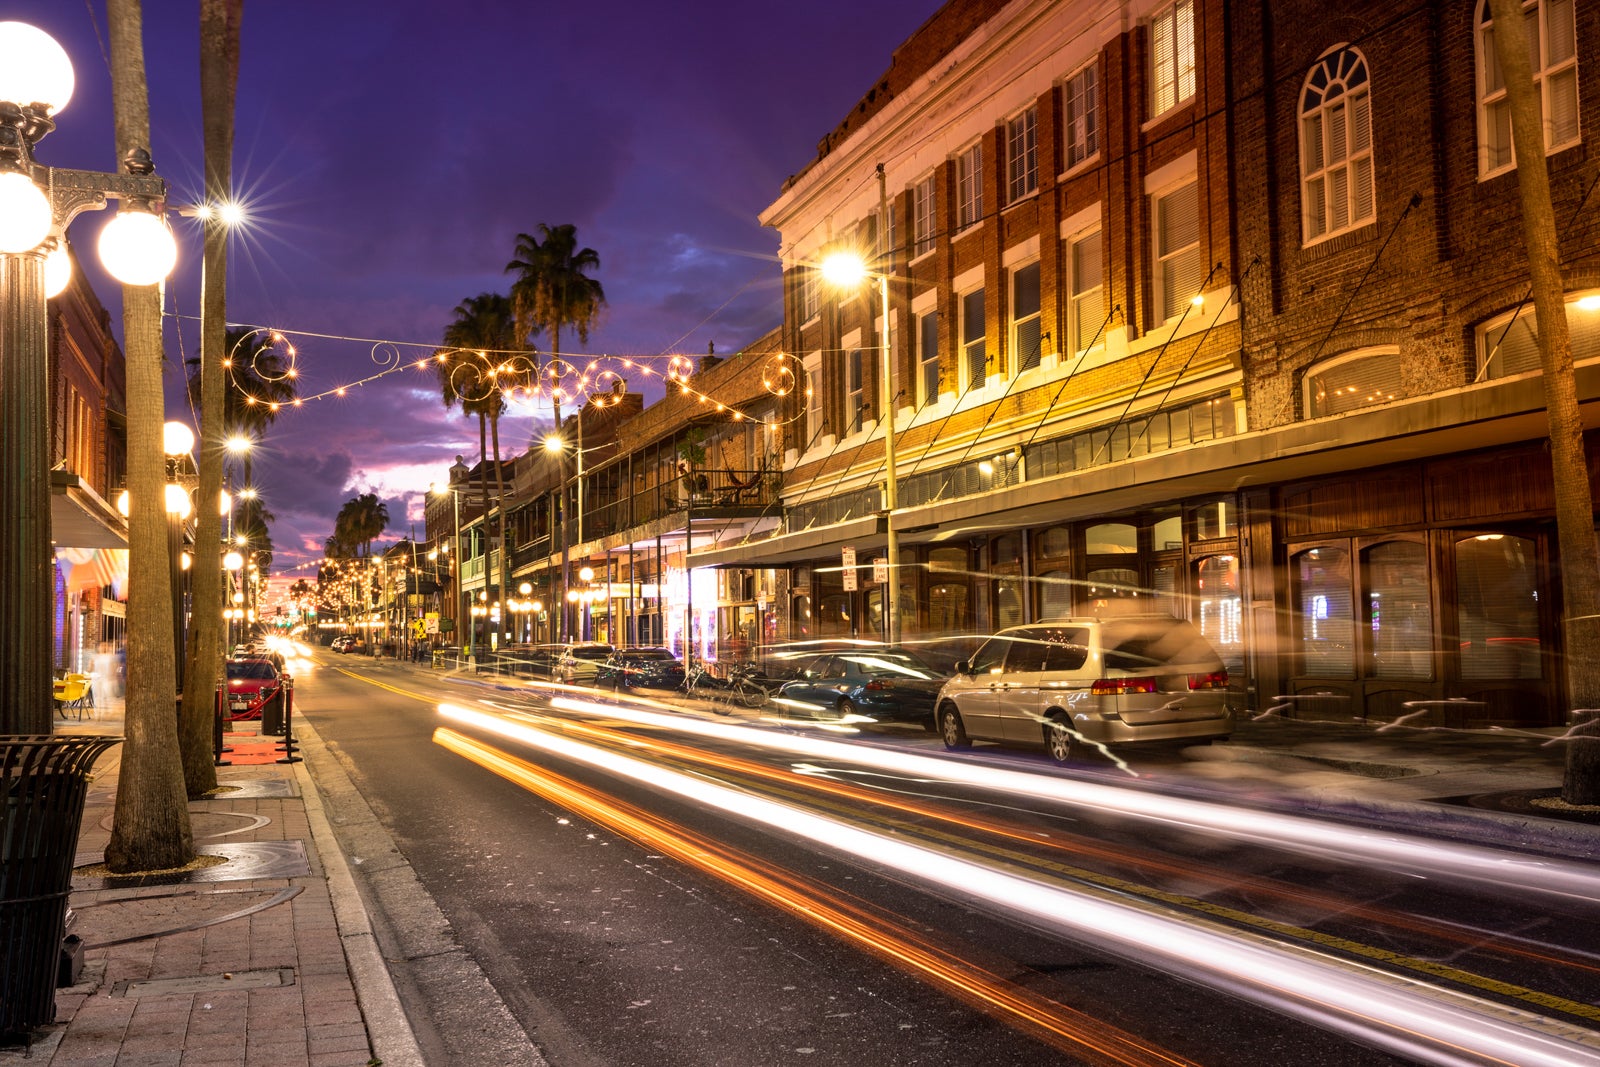 Ybor City at night in Tampa Florida USA